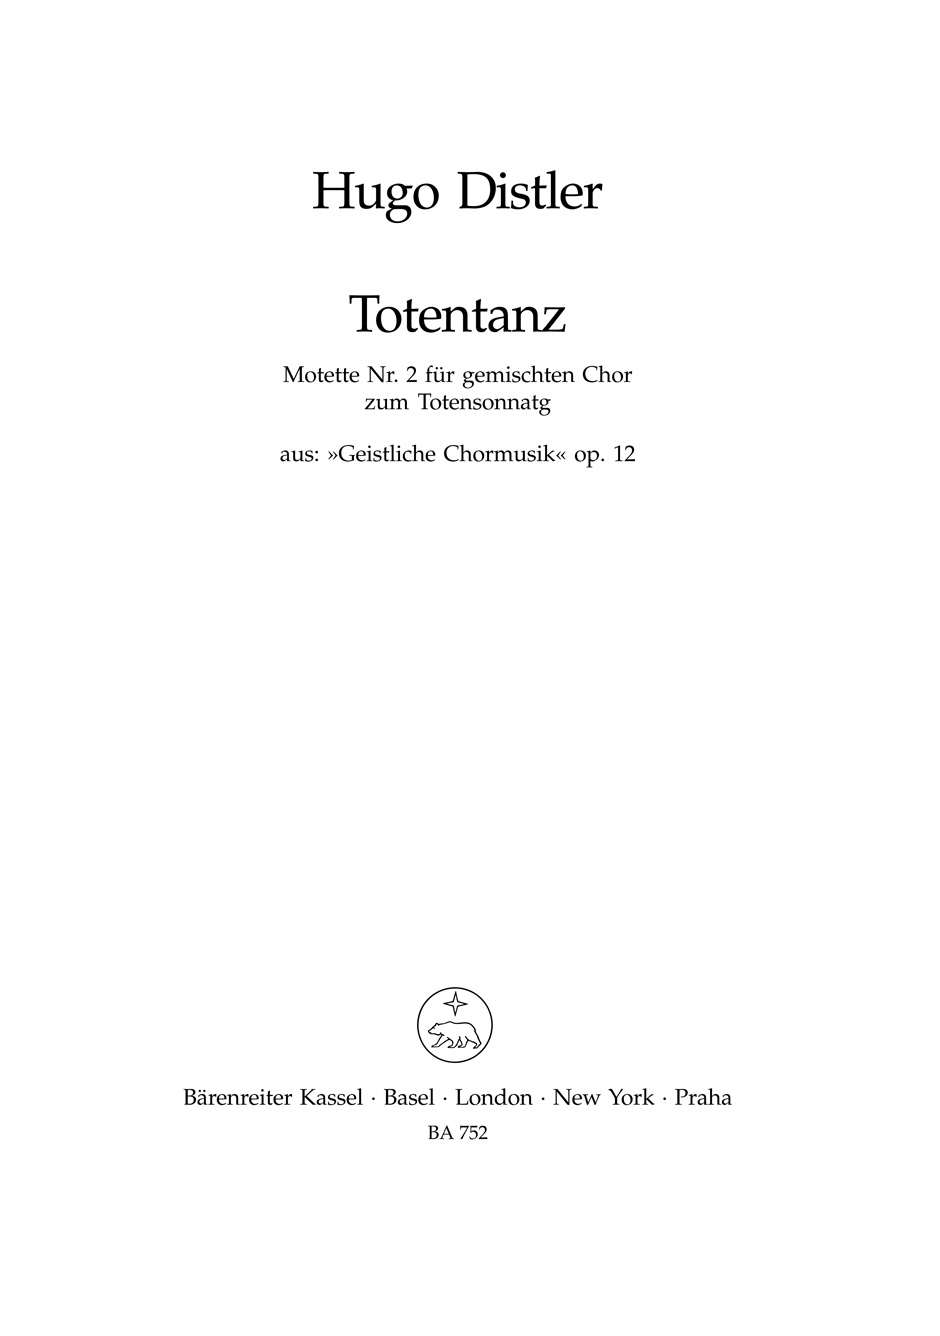 Totentanz op. 12/2, Werk Nr. 2 aus Geistliche Chormusik (1934-1941)., score